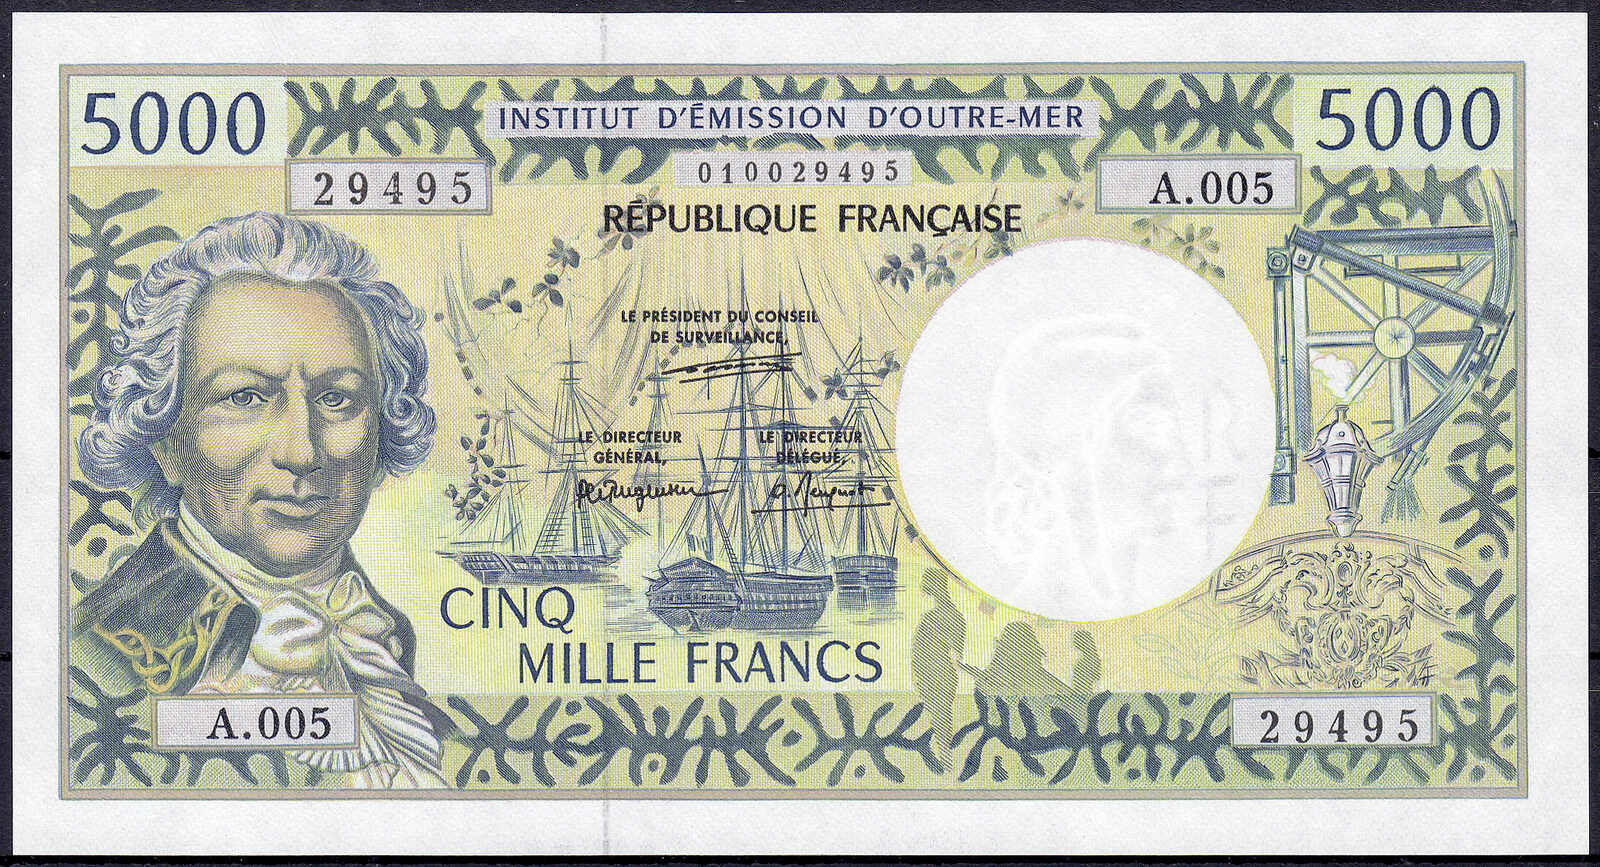 110.580.45: Territoires du Pacifique de billets de banque - Océanie - Français